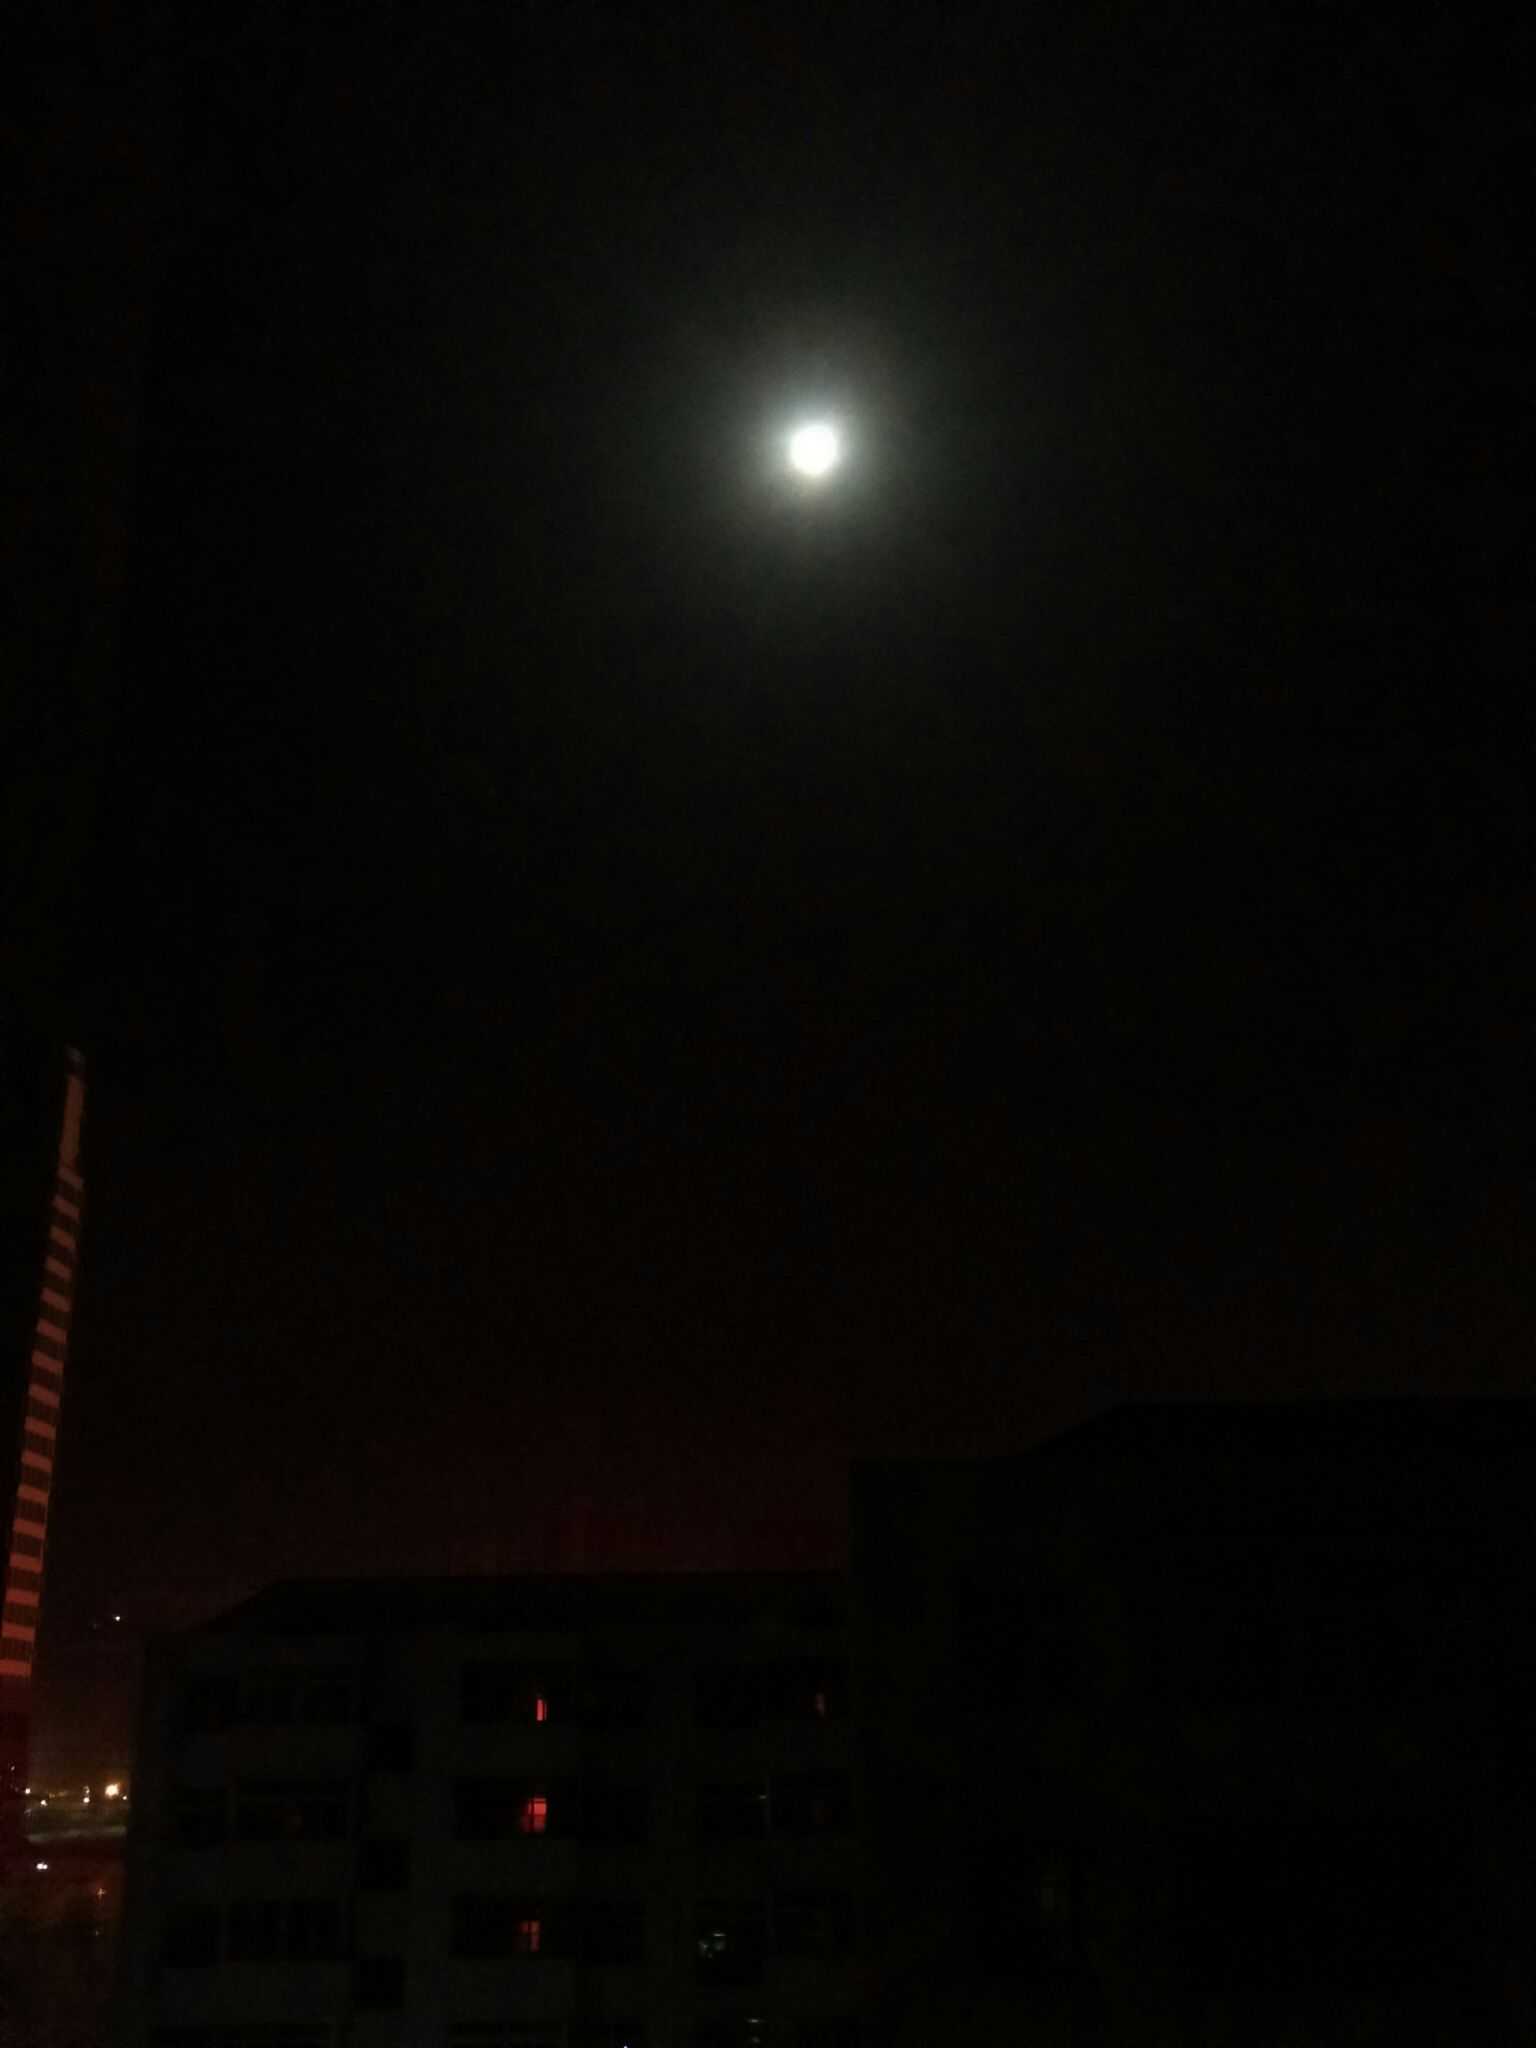 今晚的月亮格外明朗 看的让人有点显孤独 它是不是也在想念谁 再等等